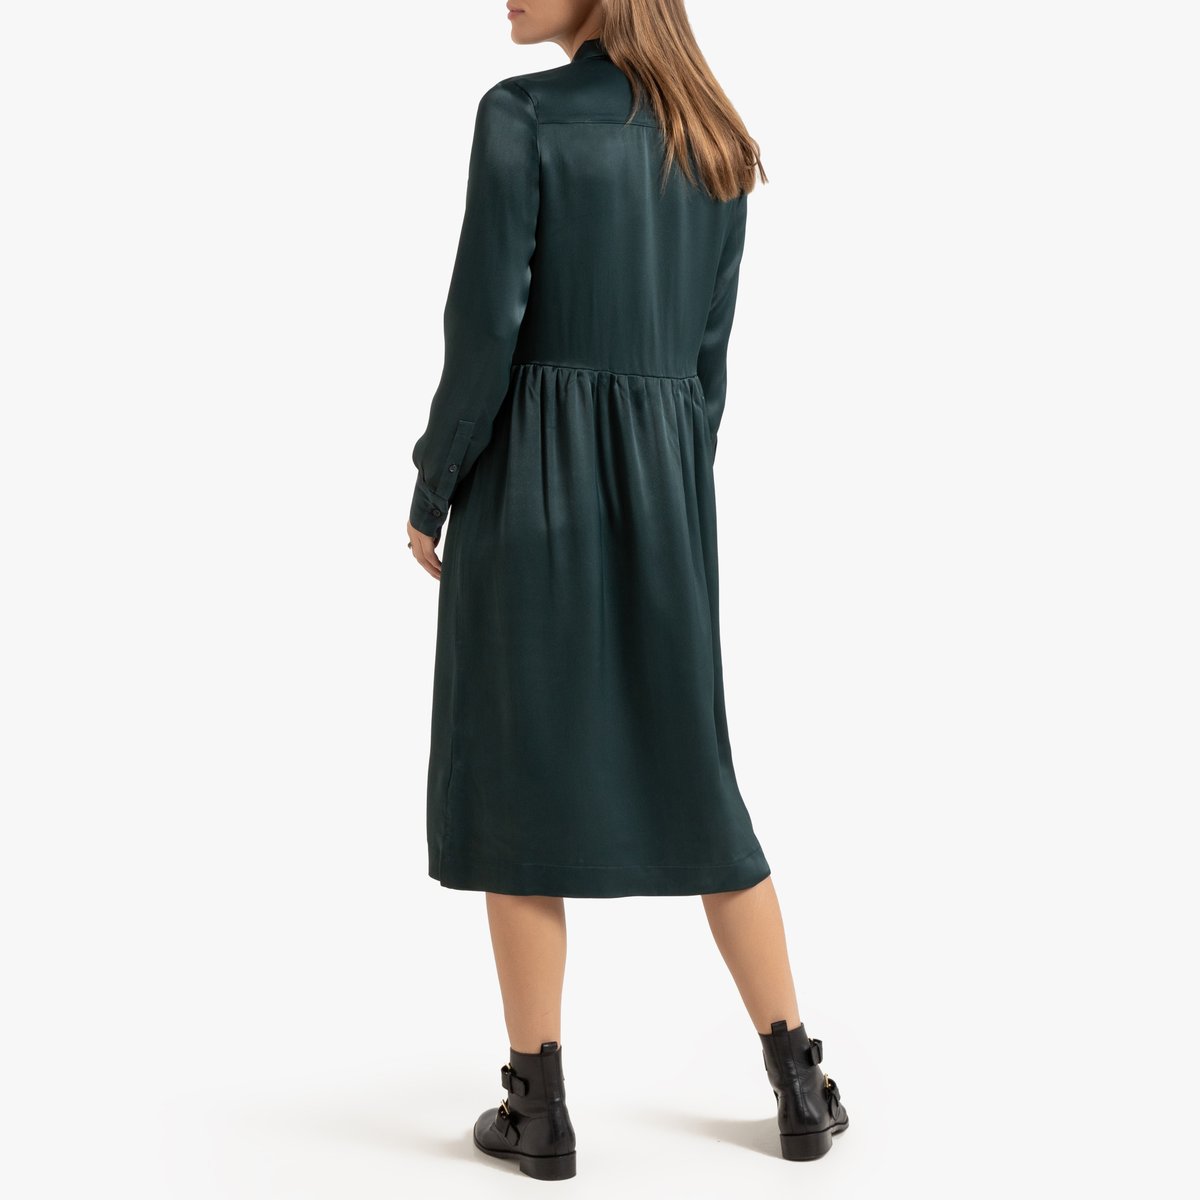 Платье-рубашка La Redoute Миди с длинными рукавами 42 (FR) - 48 (RUS) зеленый, размер 42 (FR) - 48 (RUS) Миди с длинными рукавами 42 (FR) - 48 (RUS) зеленый - фото 3